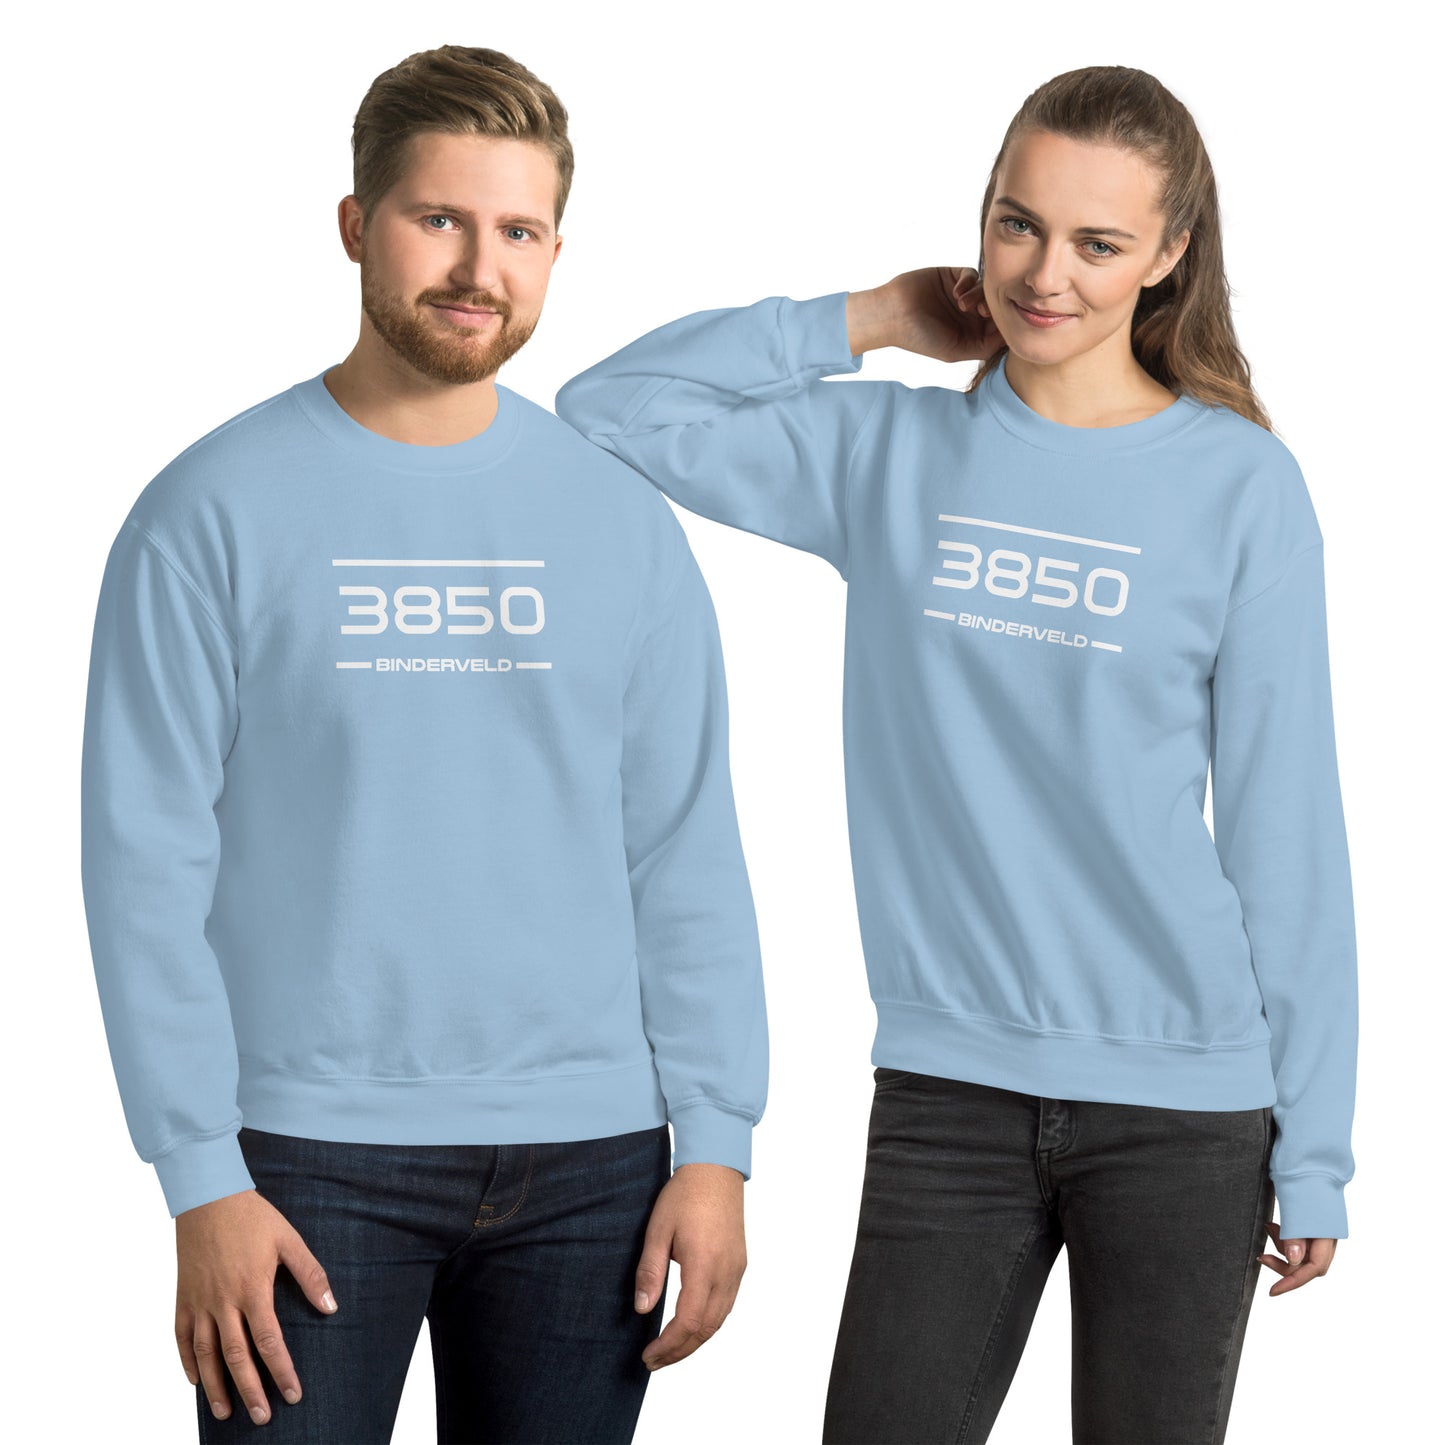 Sweater - 3850 - Binderveld (M/V)